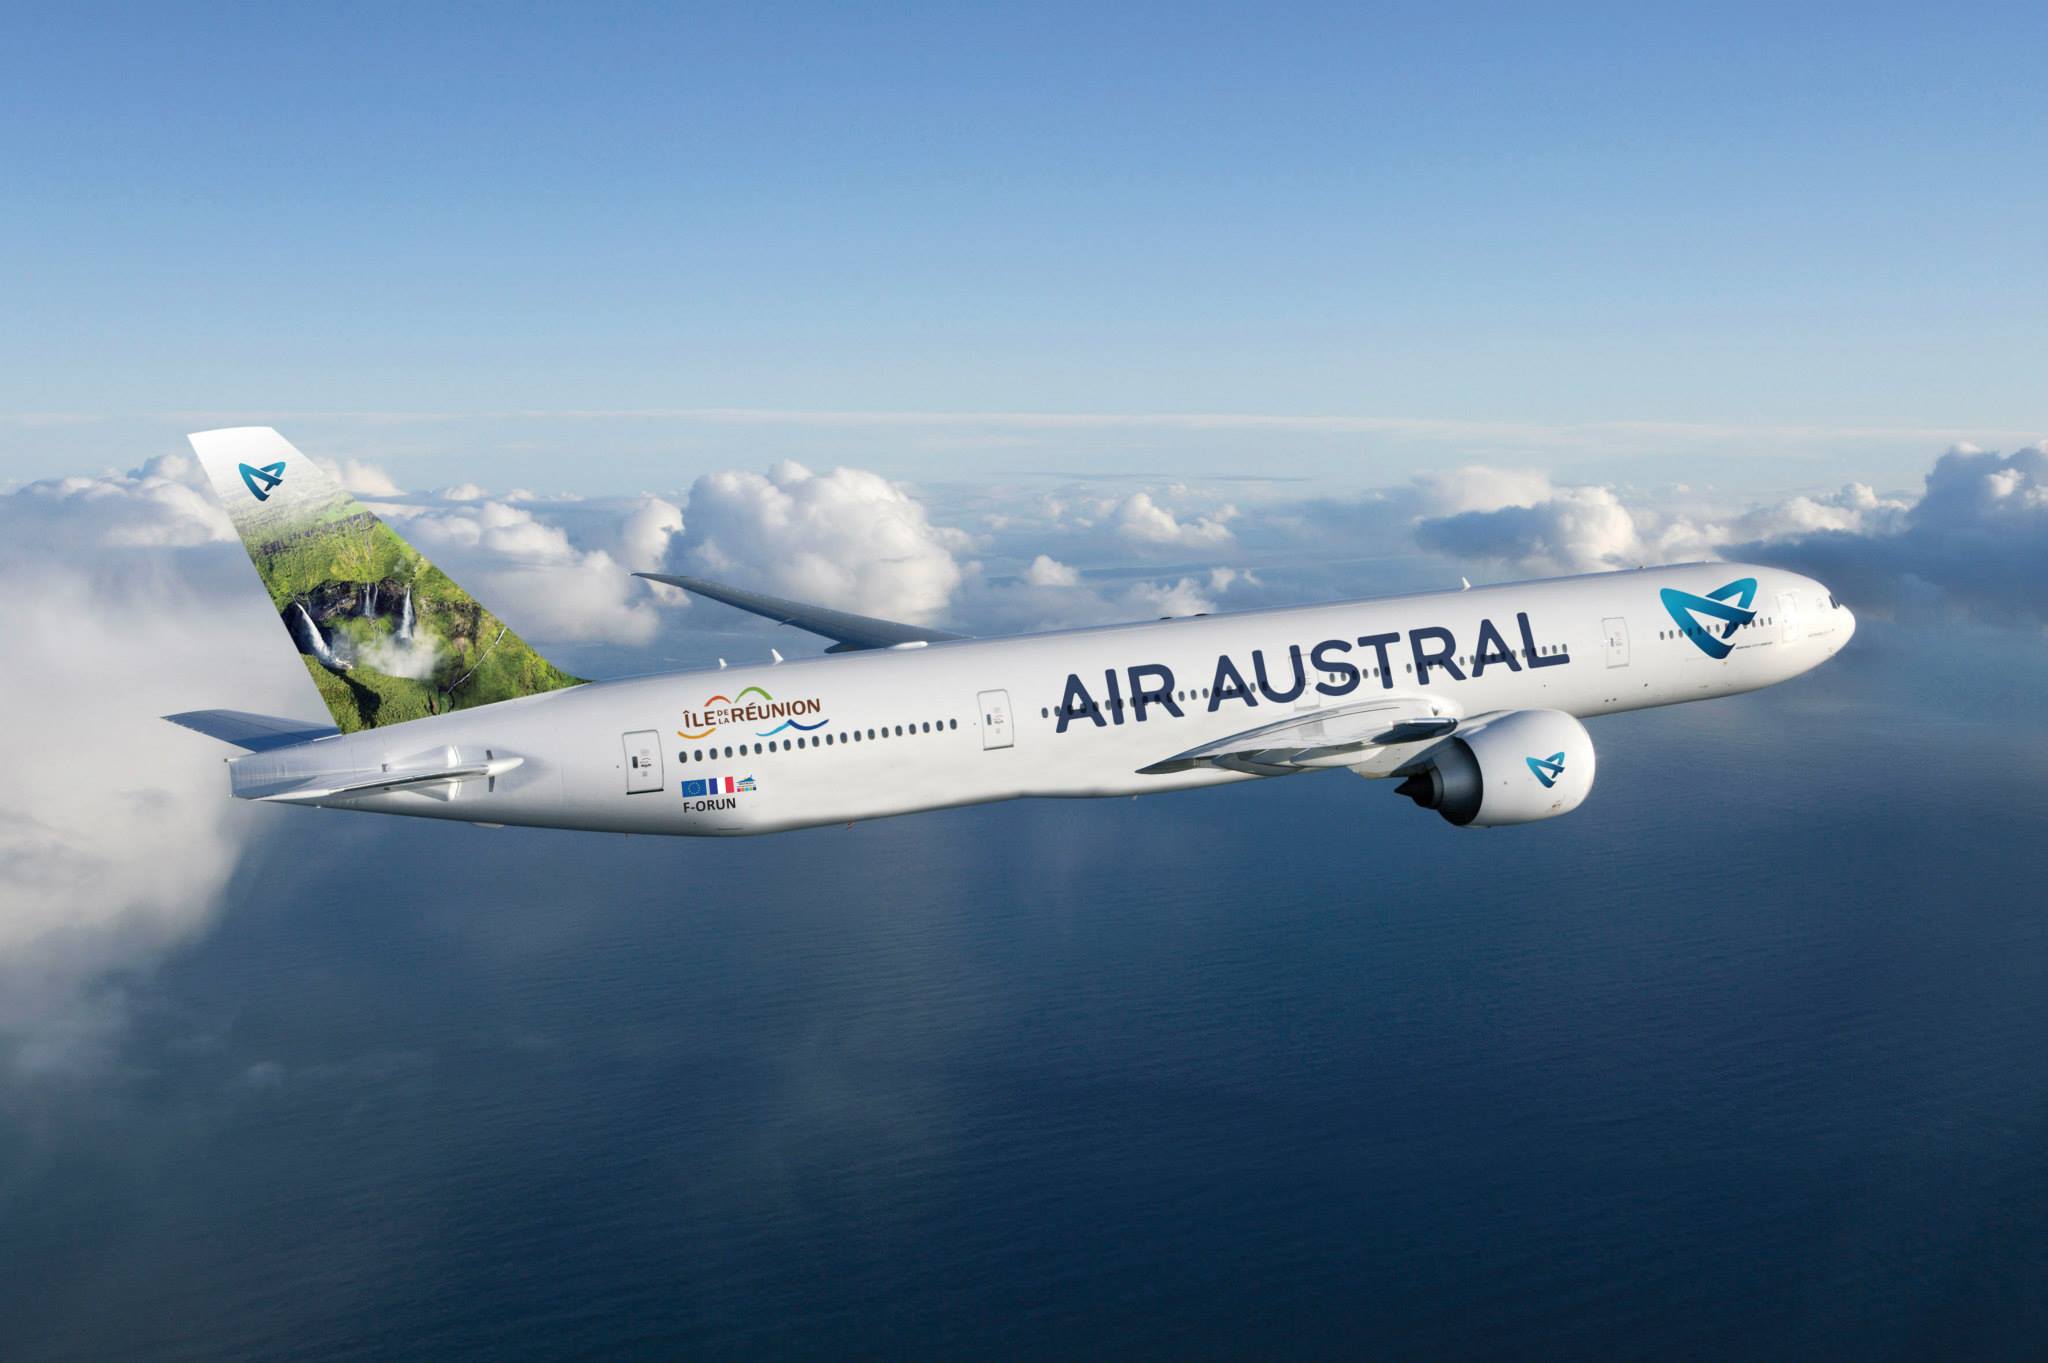 Le premier appareil d'Air Austral avec ses nouvelles couleurs a atterri